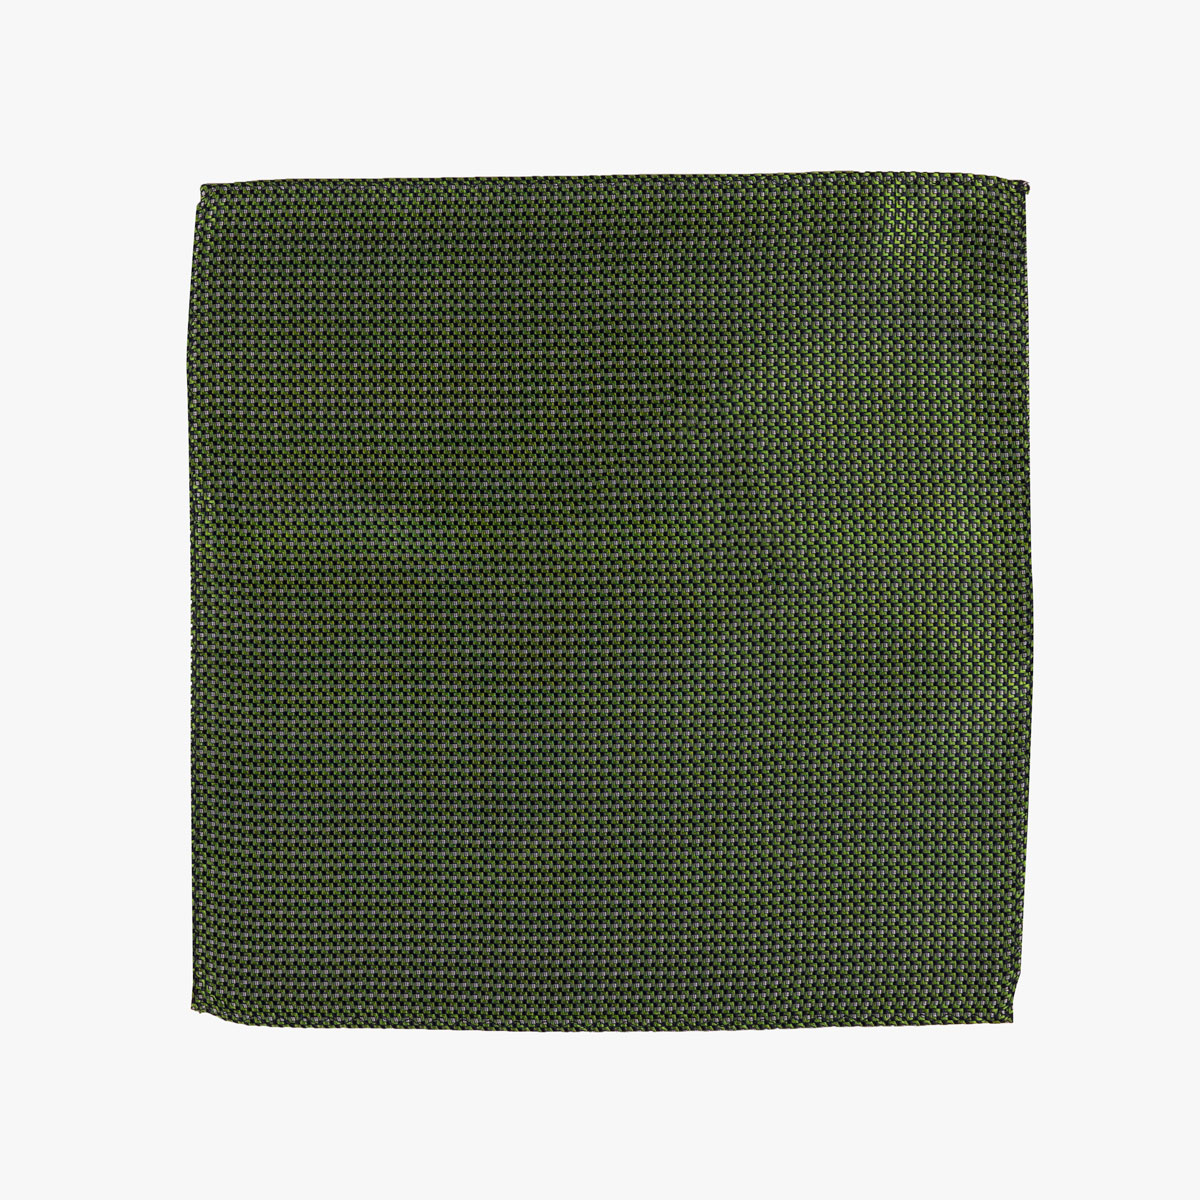 Einstecktuch mit geometrischem Muster in Grün Blau